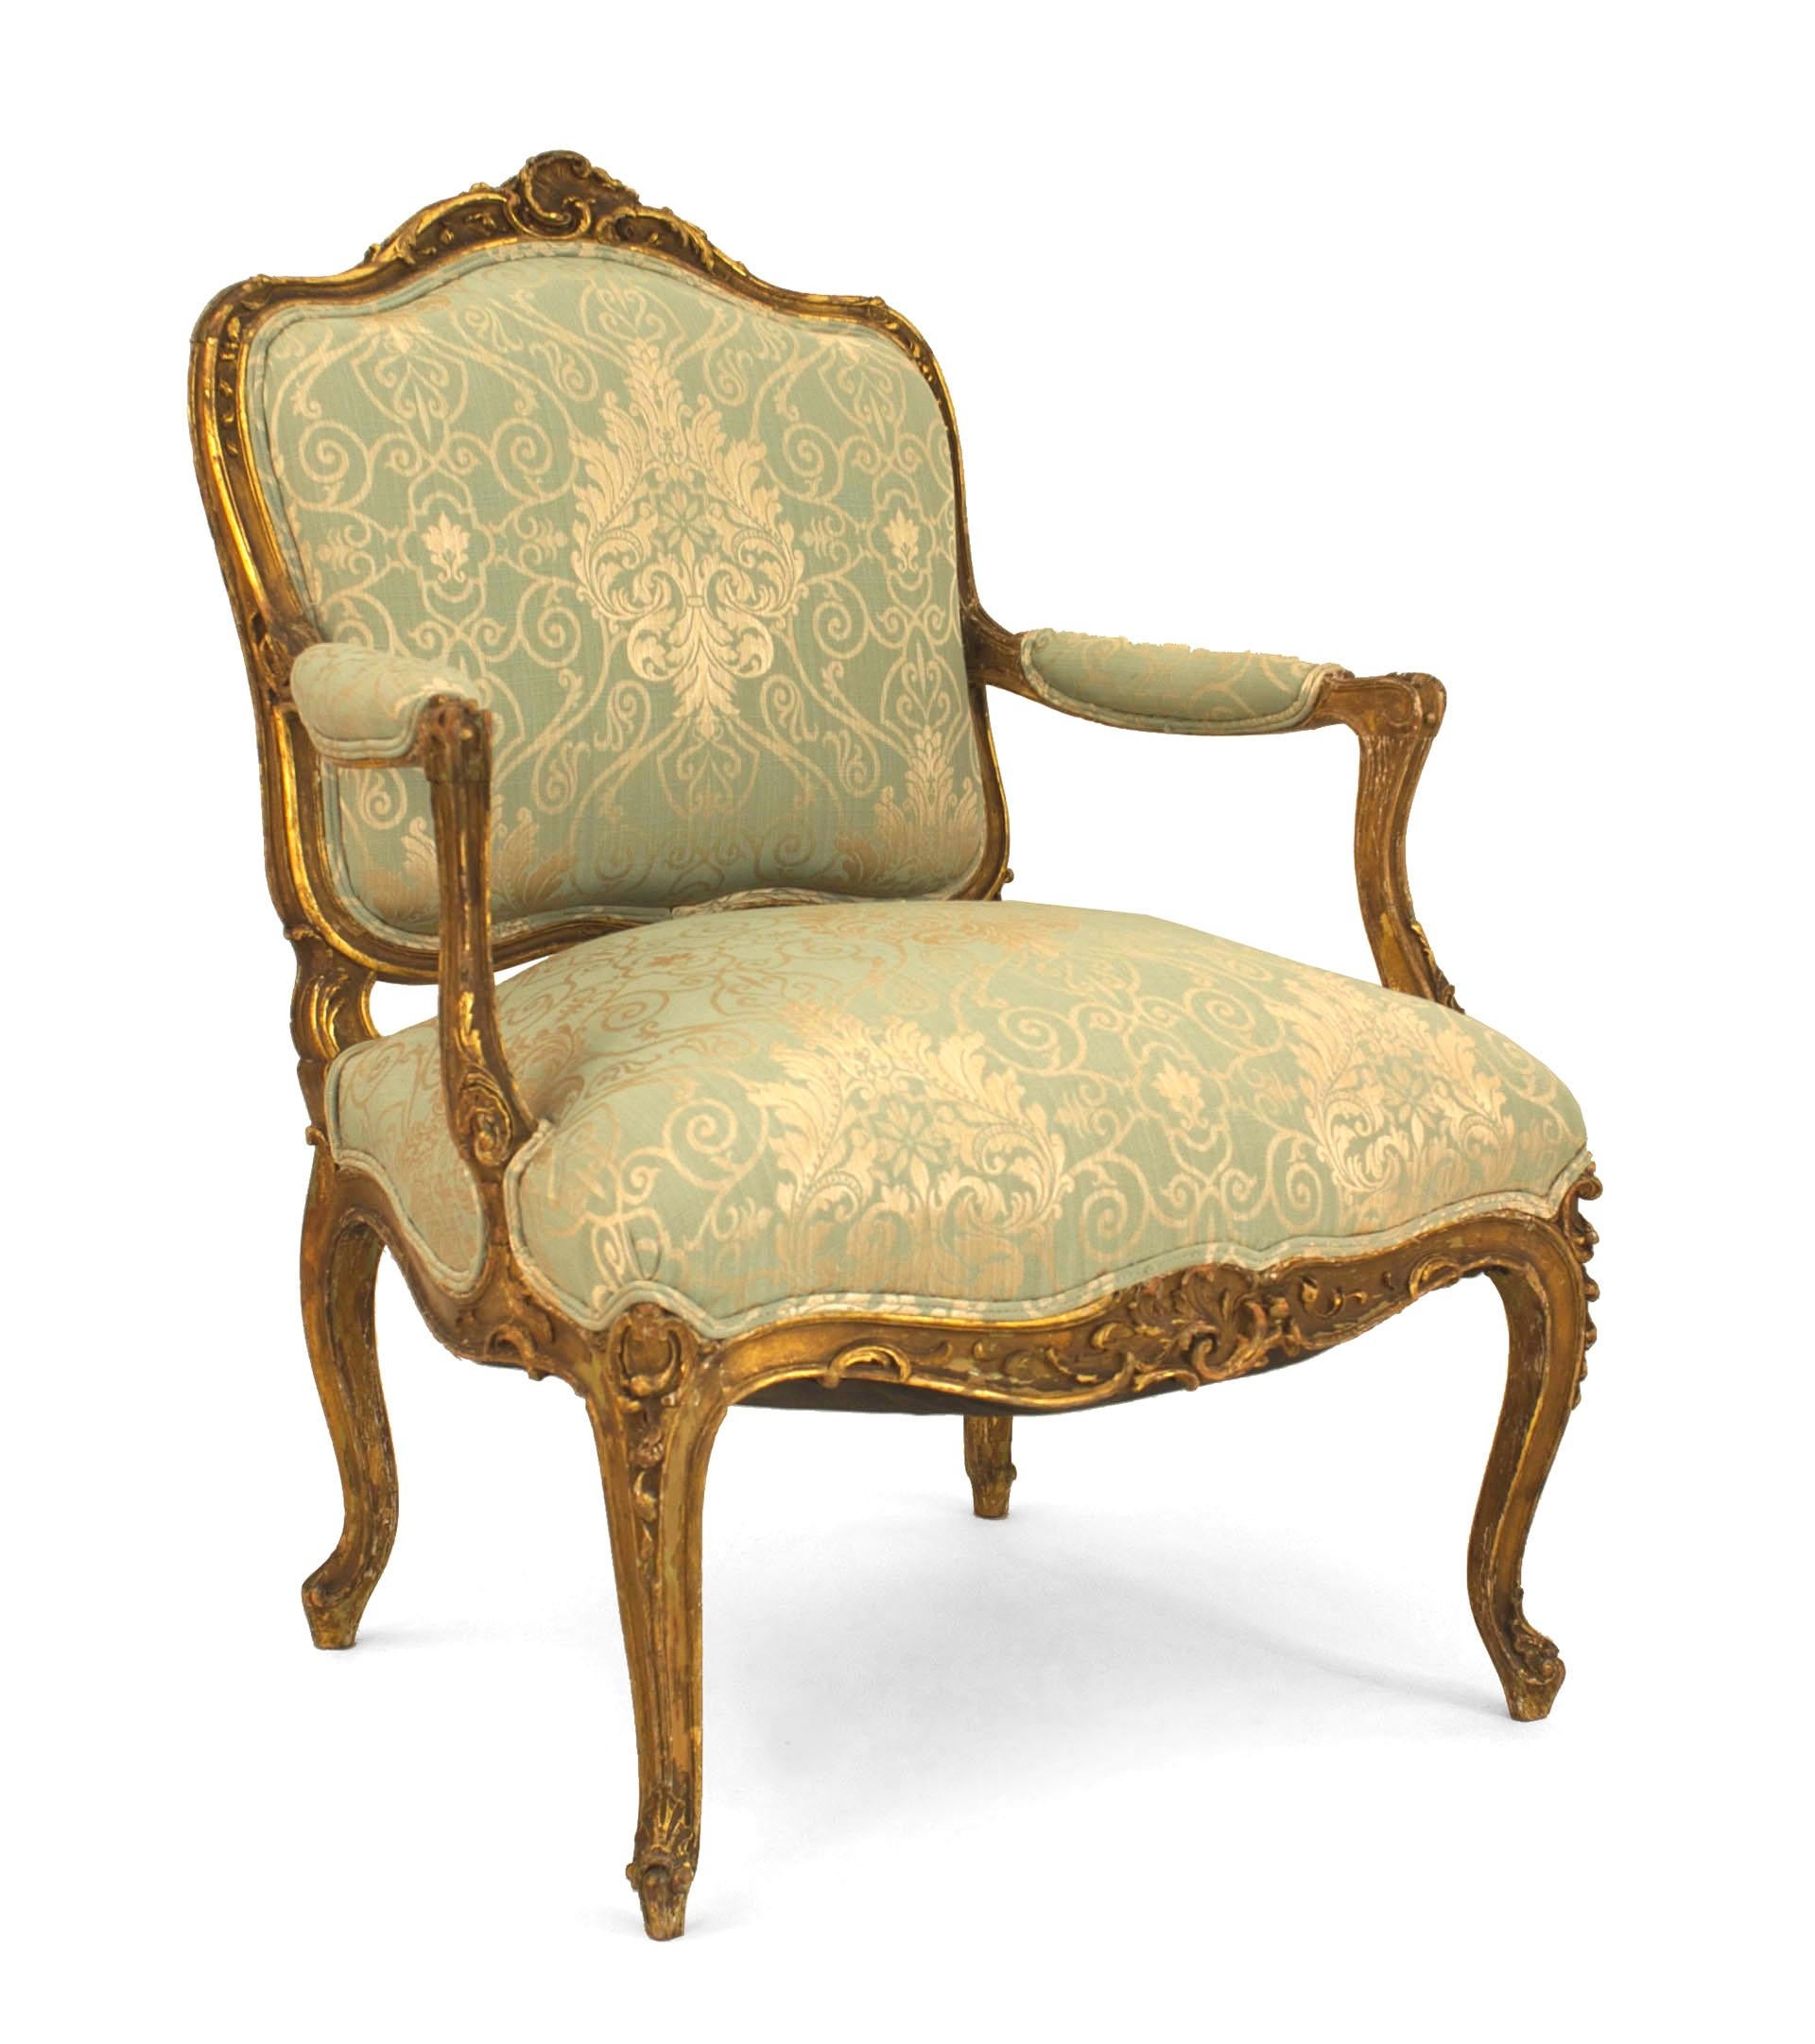 4 vergoldete Wohnzimmer-/Salongarnituren im französischen Louis XV-Stil (19. Jh.) mit hellgrüner Damastbespannung. 3 Sessel: 27¬Ω 